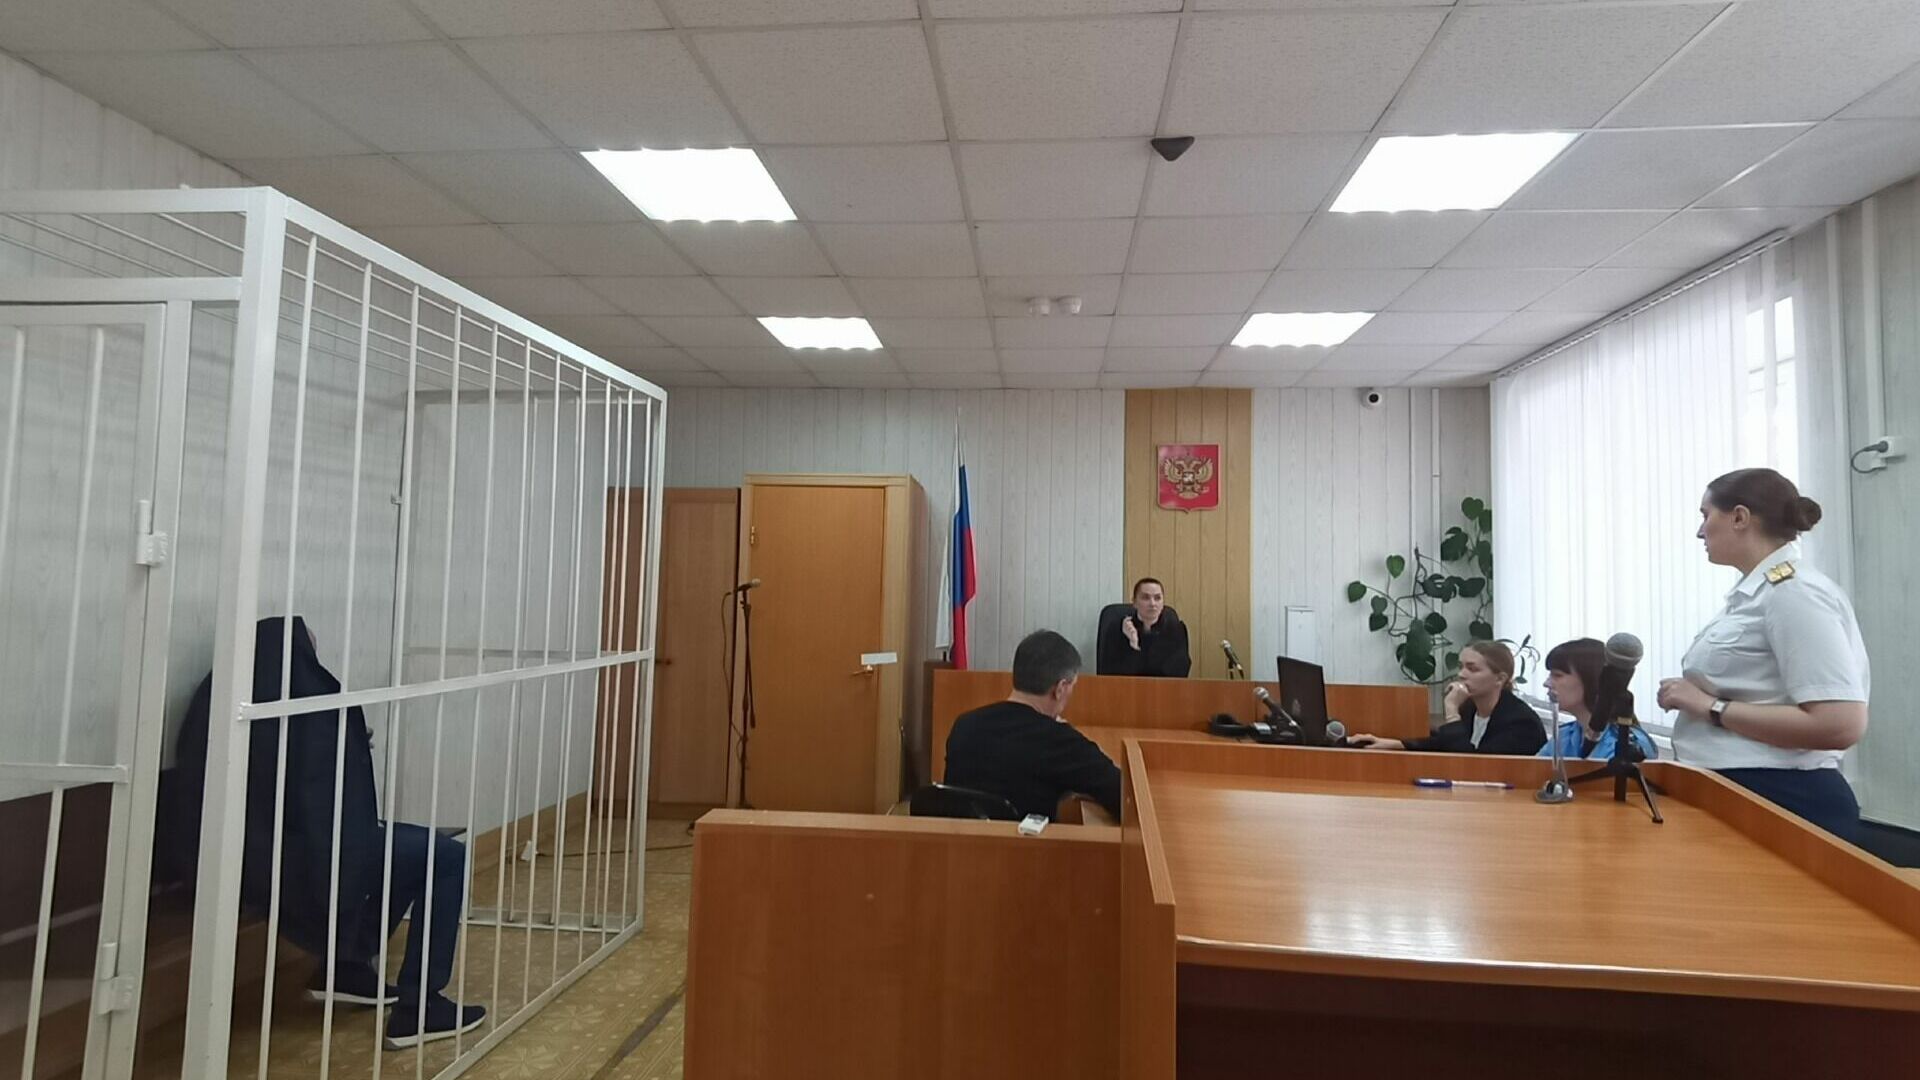 Меру пресечения избрали в Куйбышевском районном суде.